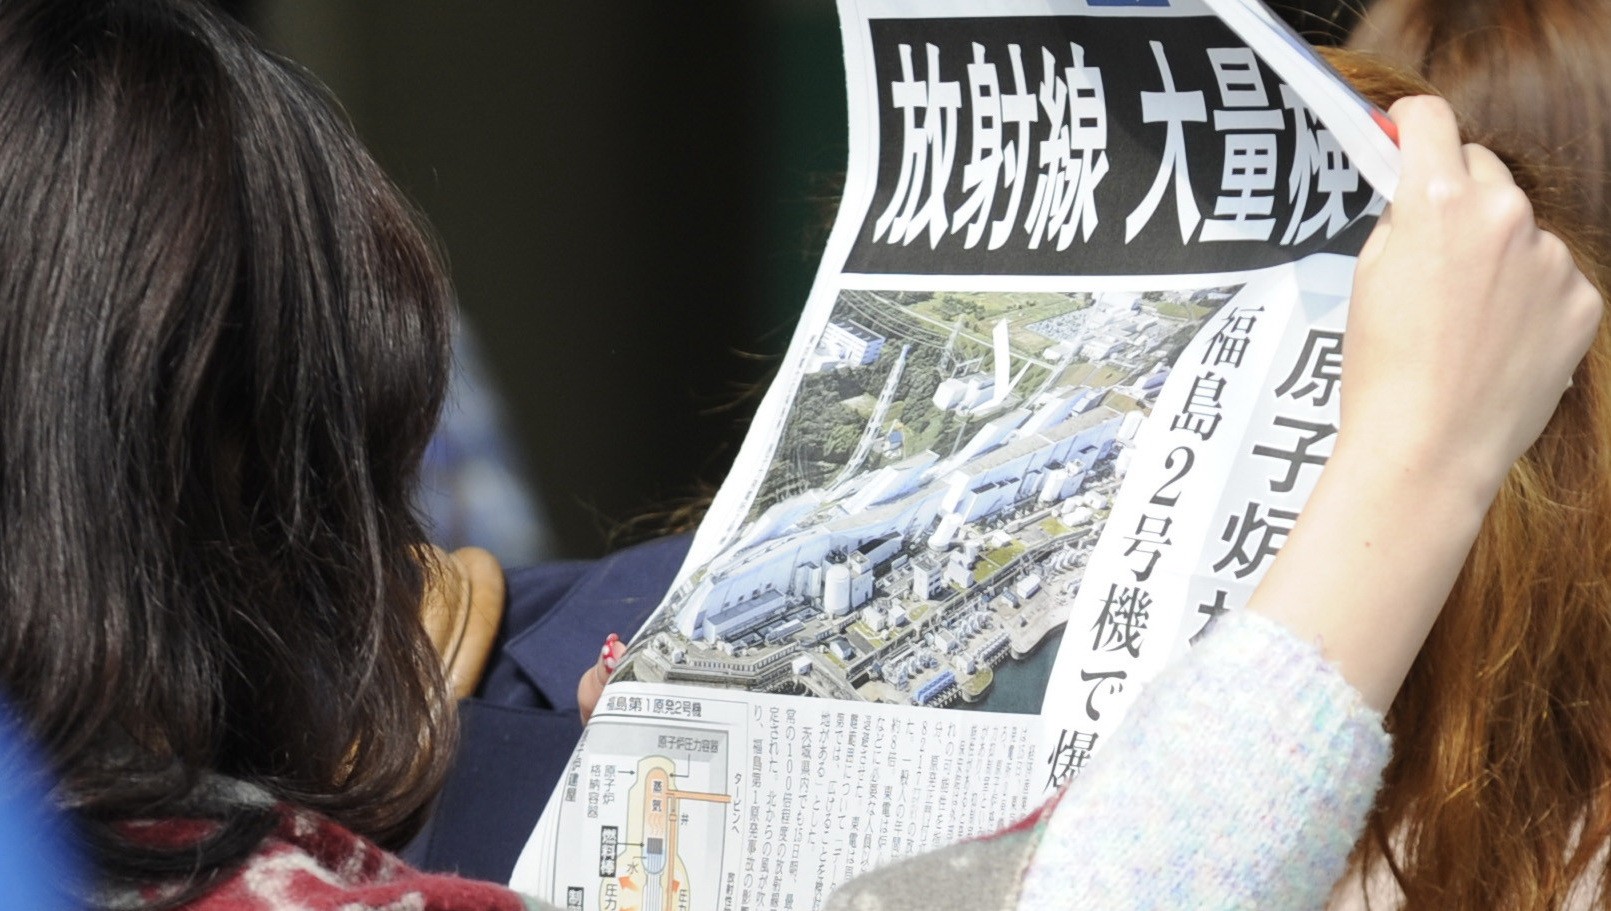 Japonka číta špeciálne vydanie novín s titulkom "Radiácia vysokých hodnôt"